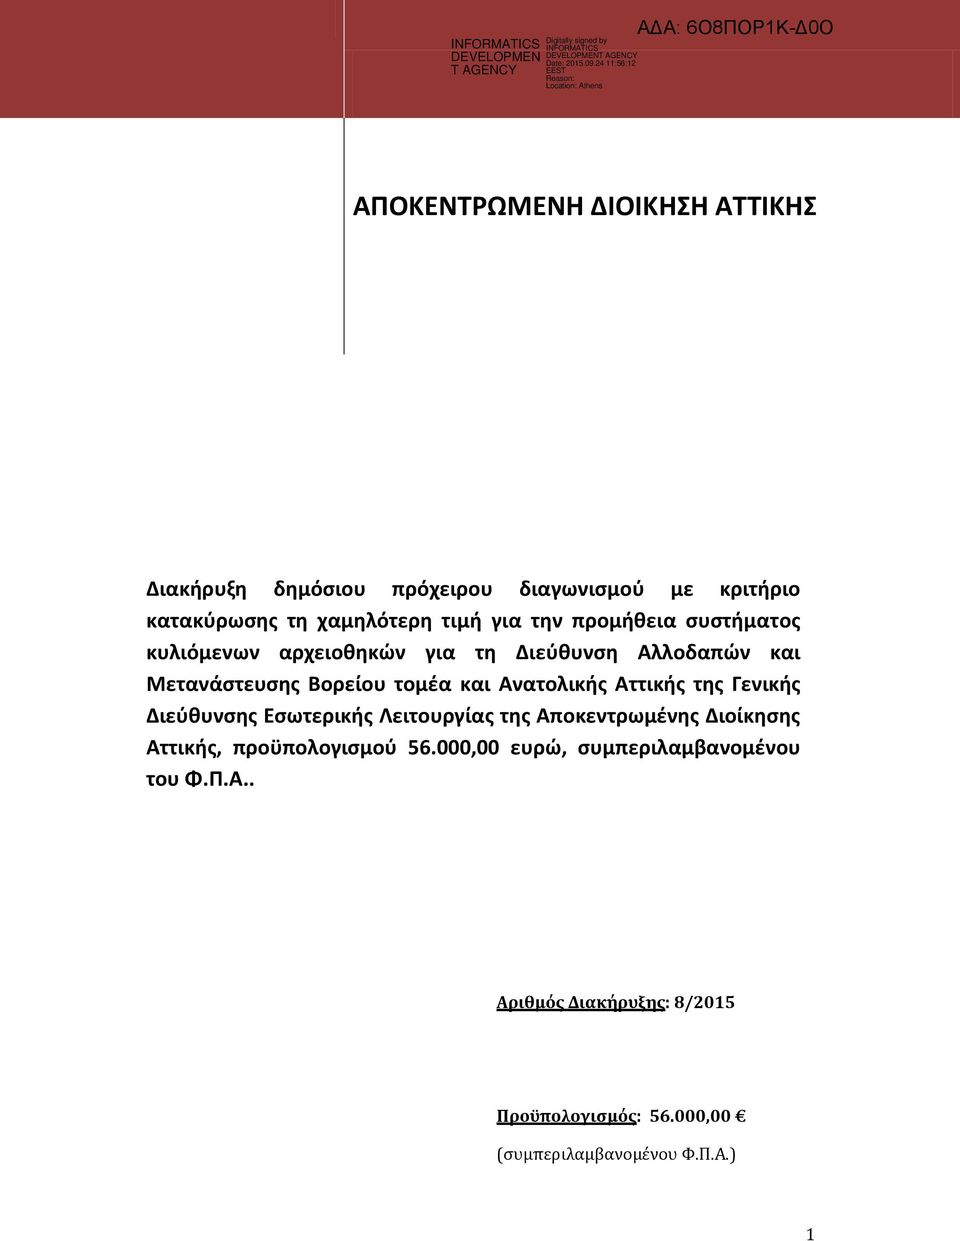 Ανατολικής Αττικής της Γενικής Διεύθυνσης Εσωτερικής Λειτουργίας της Αποκεντρωμένης Διοίκησης Αττικής, προϋπολογισμού